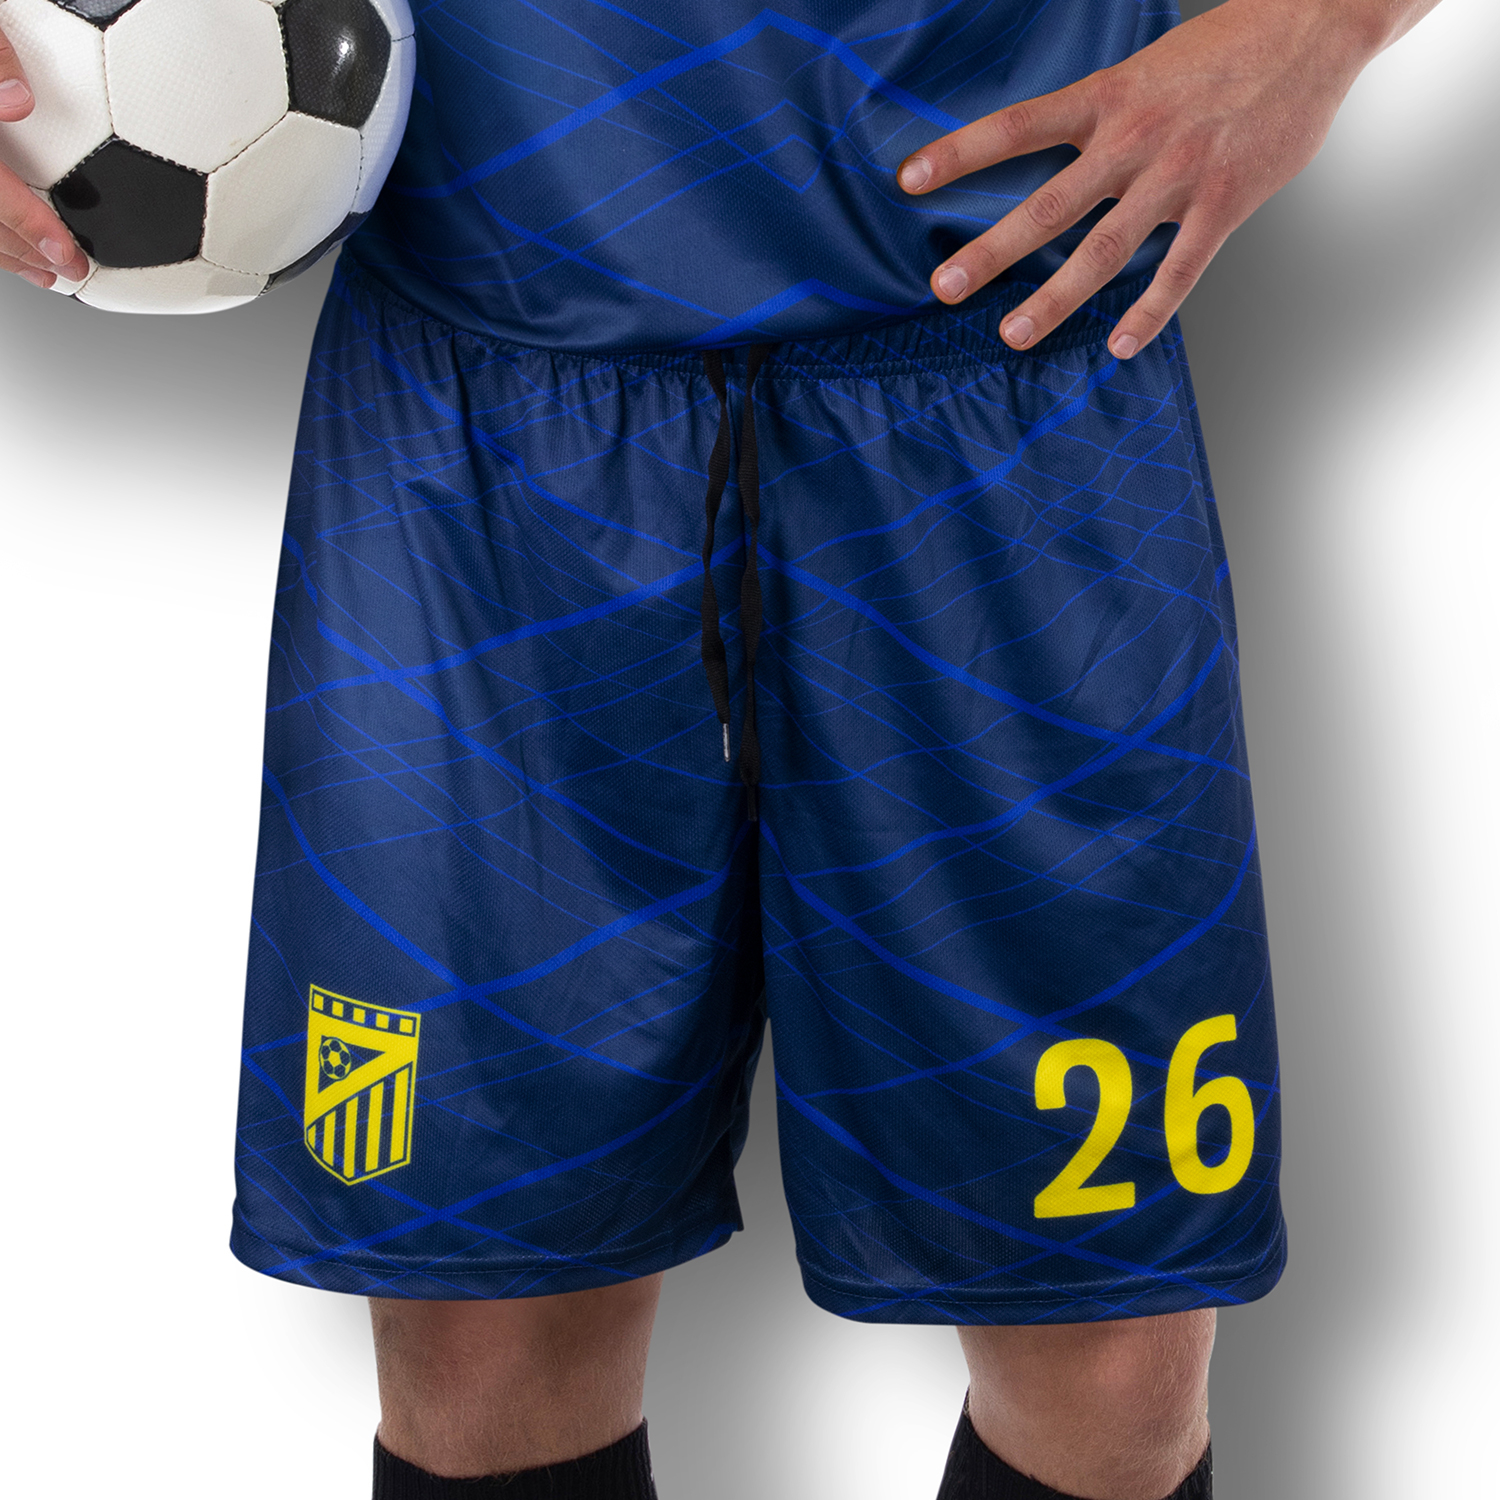 Teamwear Custom Mens Soccer Shorts custom